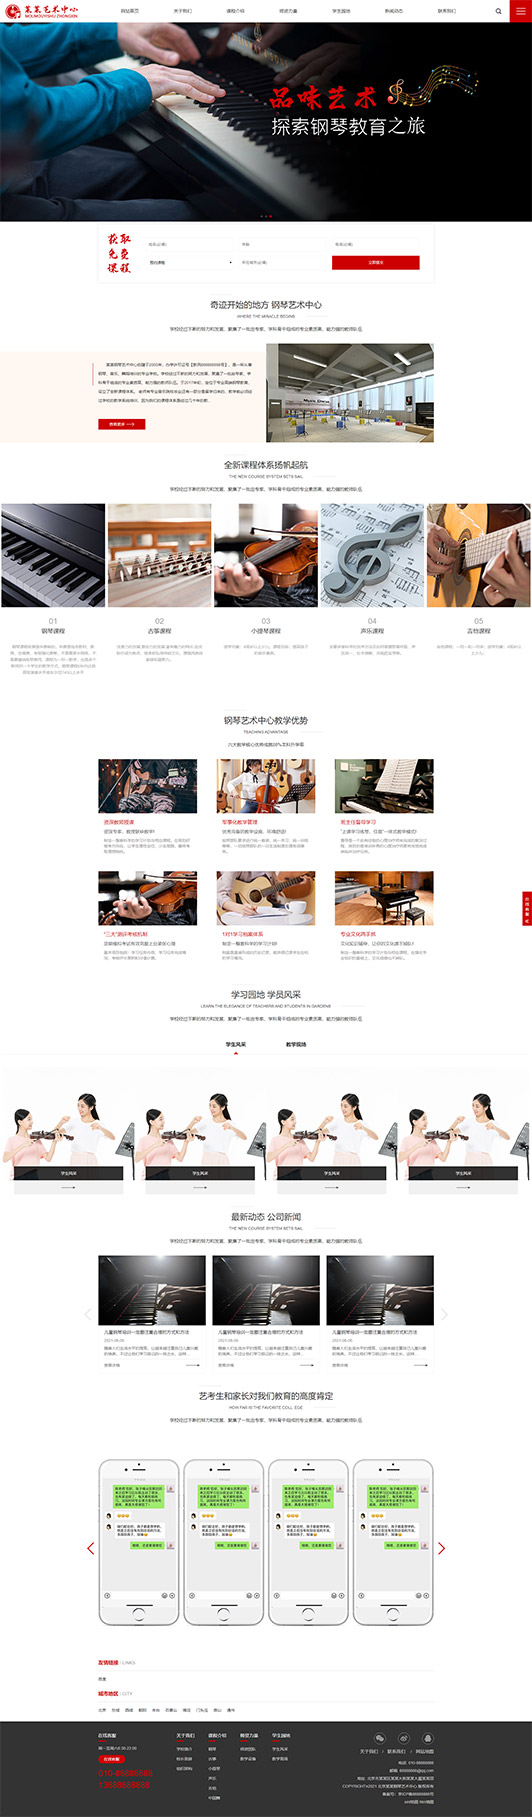 毕节钢琴艺术培训公司响应式企业网站